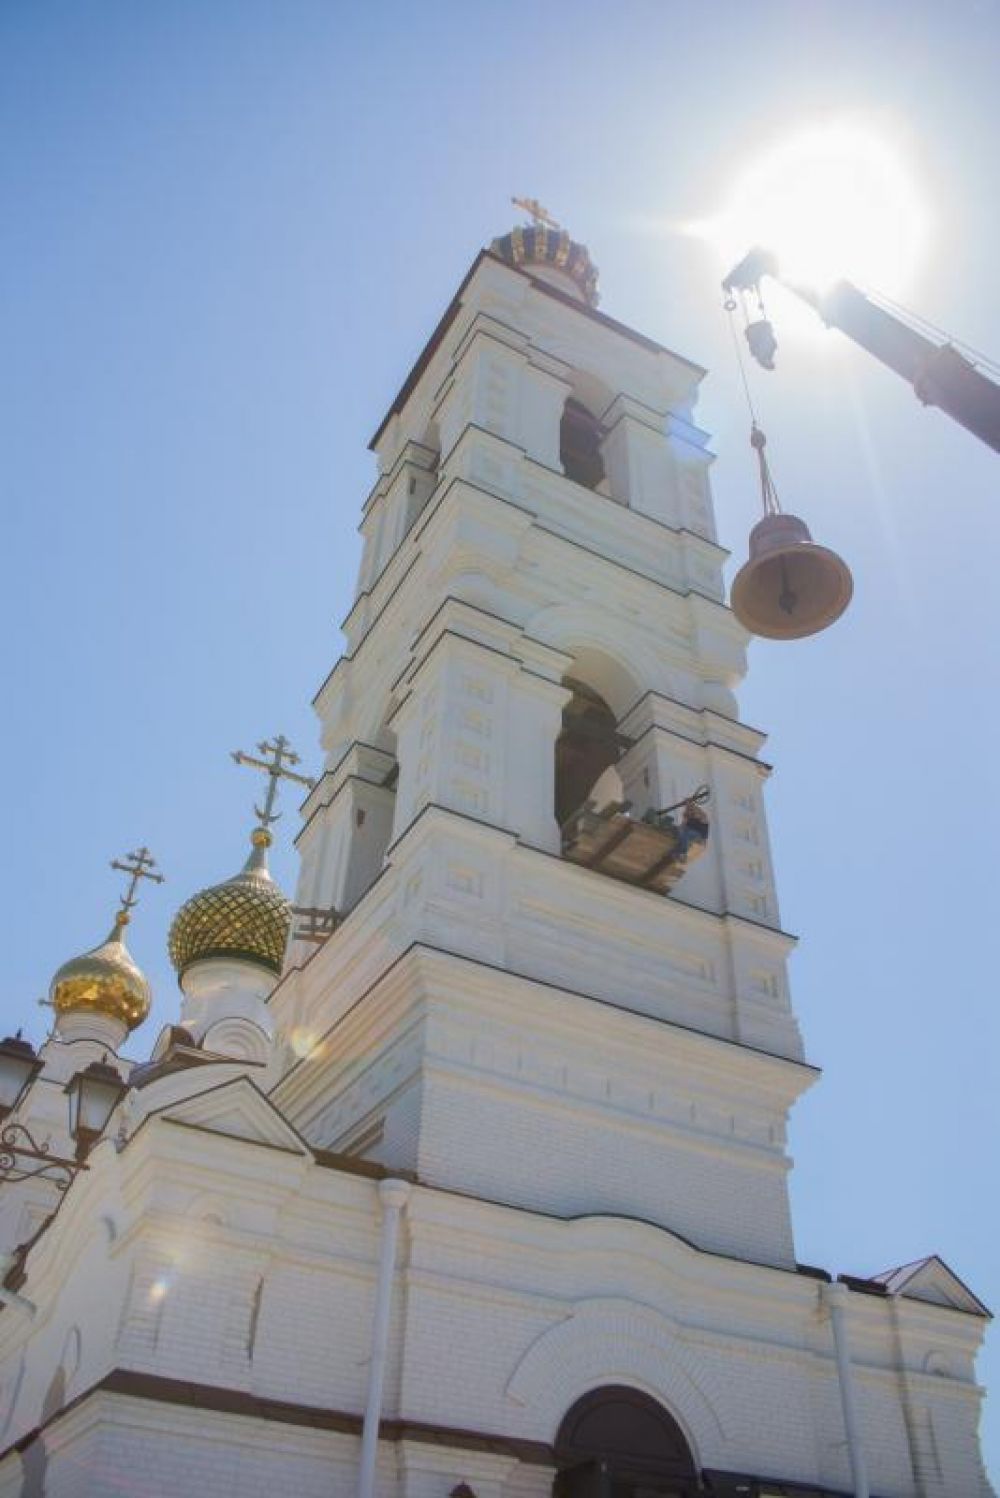 Свято-Троицкий – один из молодых храмов Волгодонска. Первый камень в его основание был заложен в 2009 году.